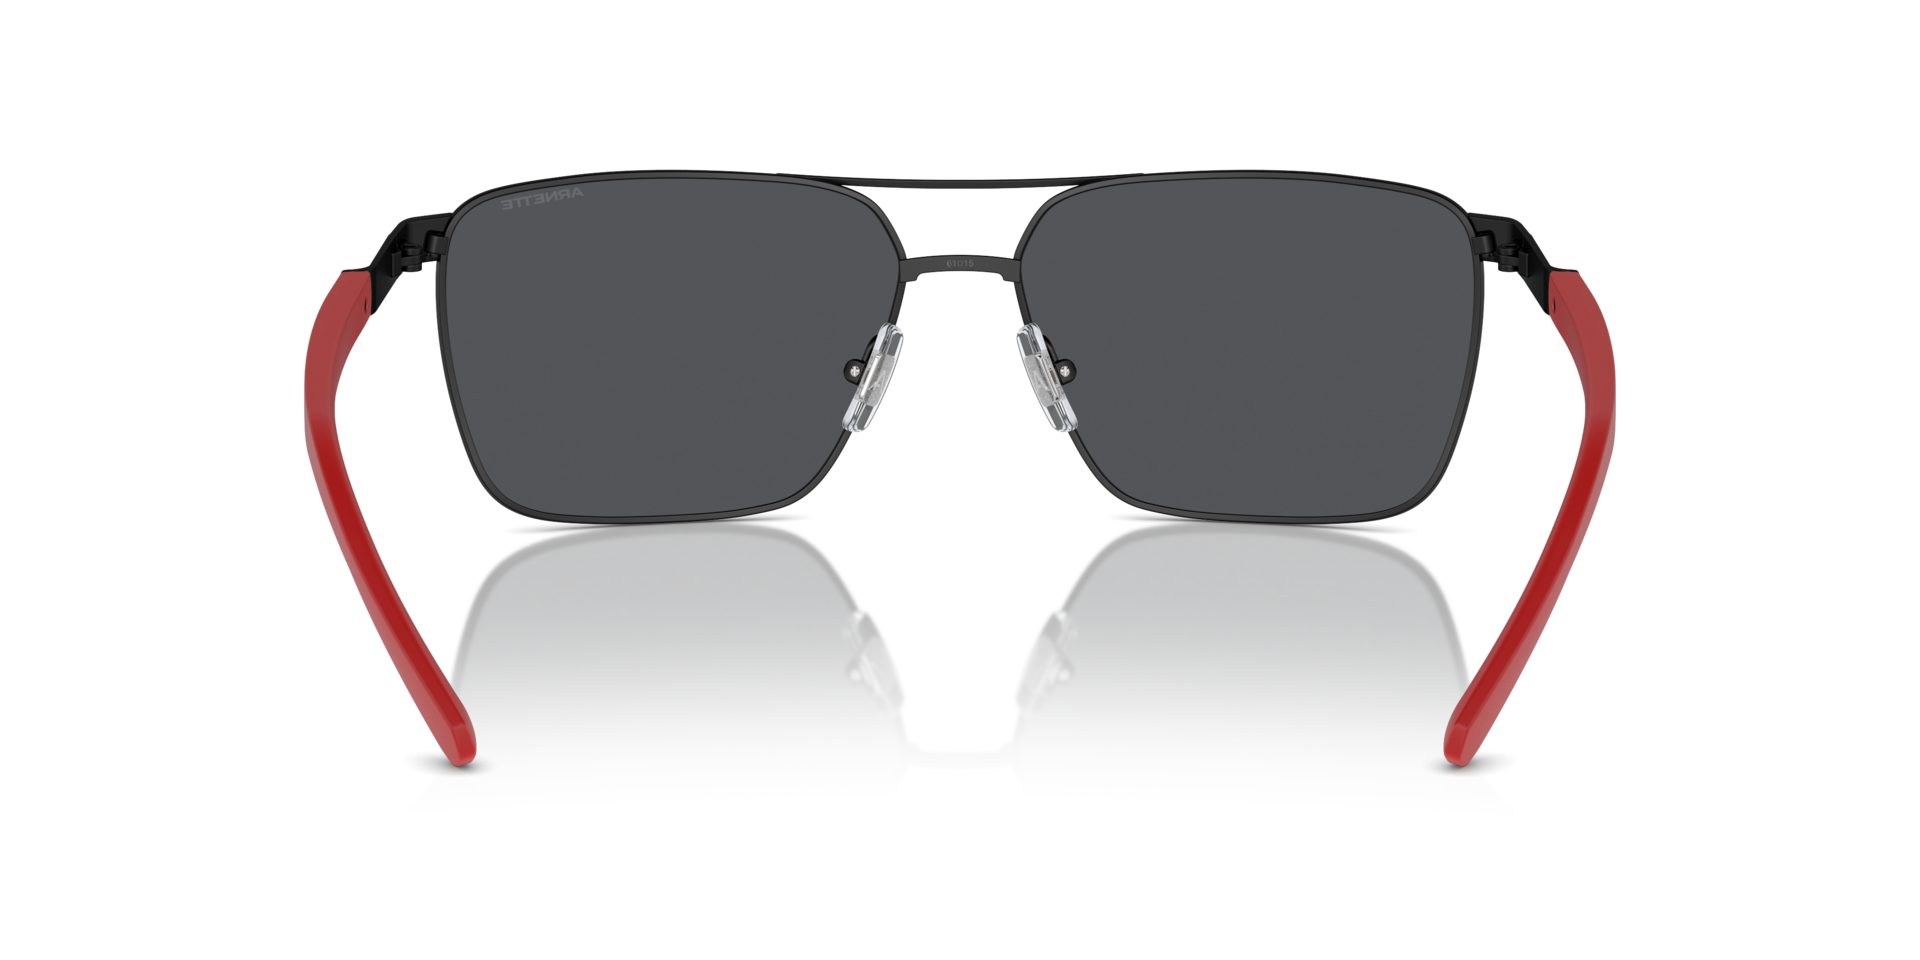 Das Bild zeigt die Sonnenbrille AN3091 737/87 von der Marke Arnette in schwarz.